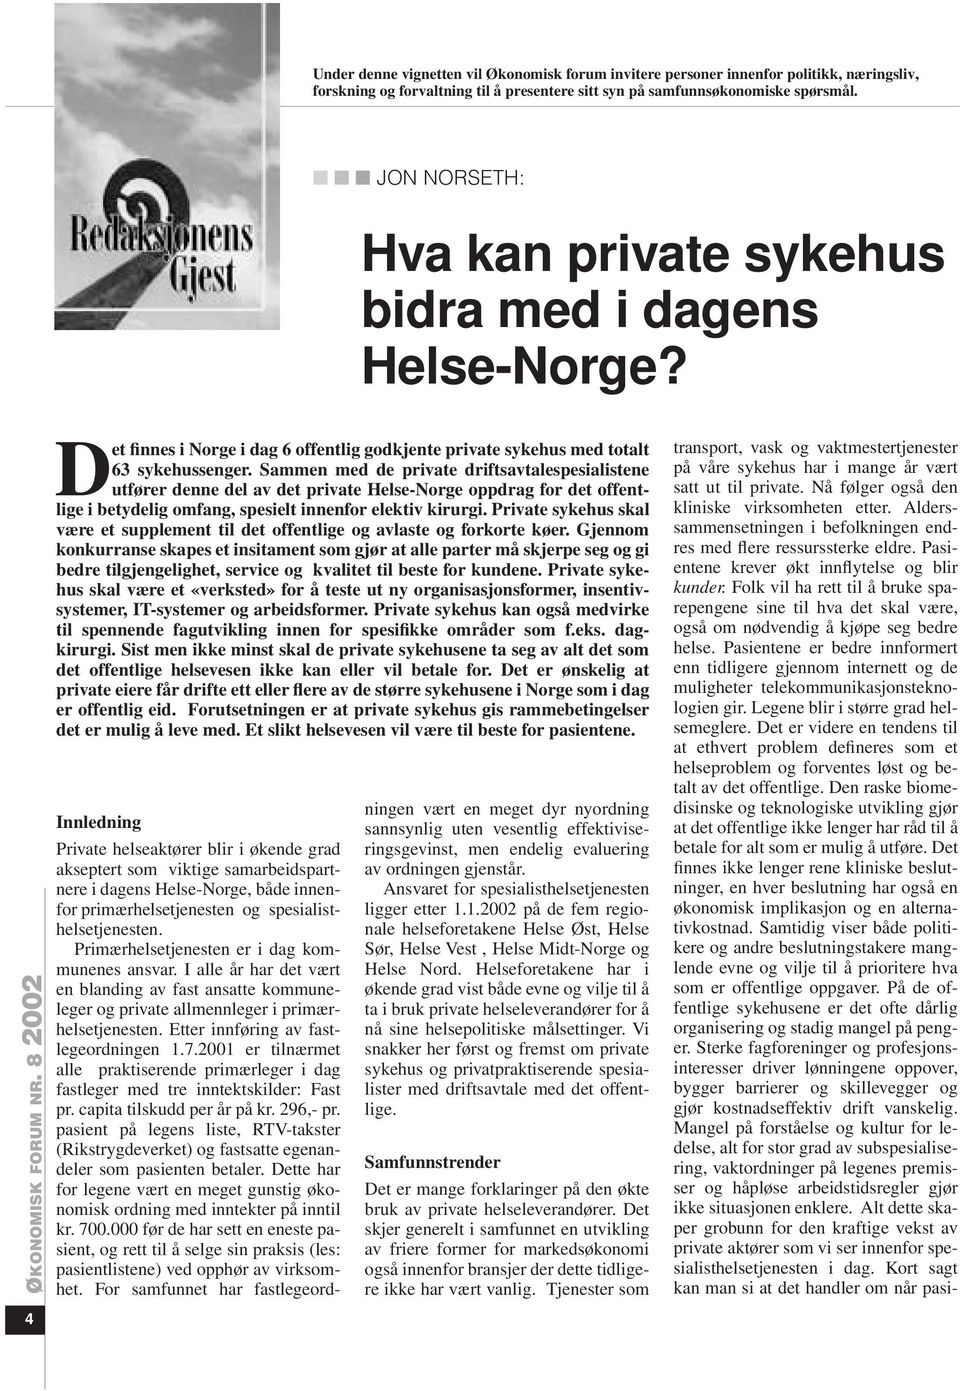 Sammen med de private driftsavtalespesialistene utfører denne del av det private Helse-Norge oppdrag for det offentlige i betydelig omfang, spesielt innenfor elektiv kirurgi.